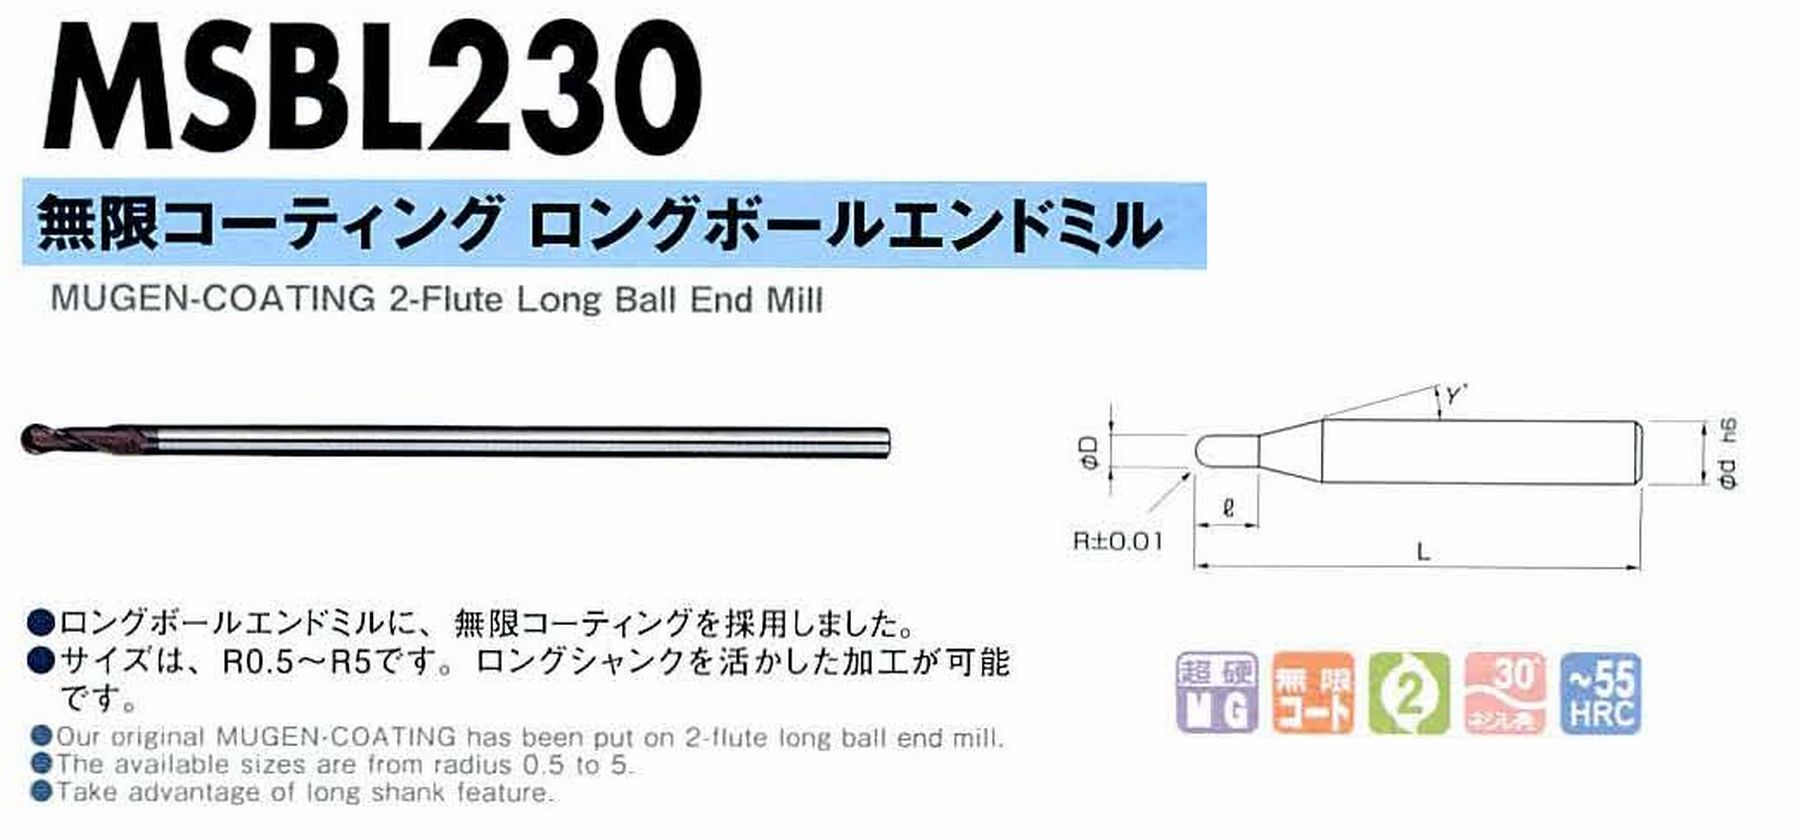 NS 無限コーティング 2枚刃ボールEM MSB230 R6 日進工具 価格比較: 栗田電車のブログ